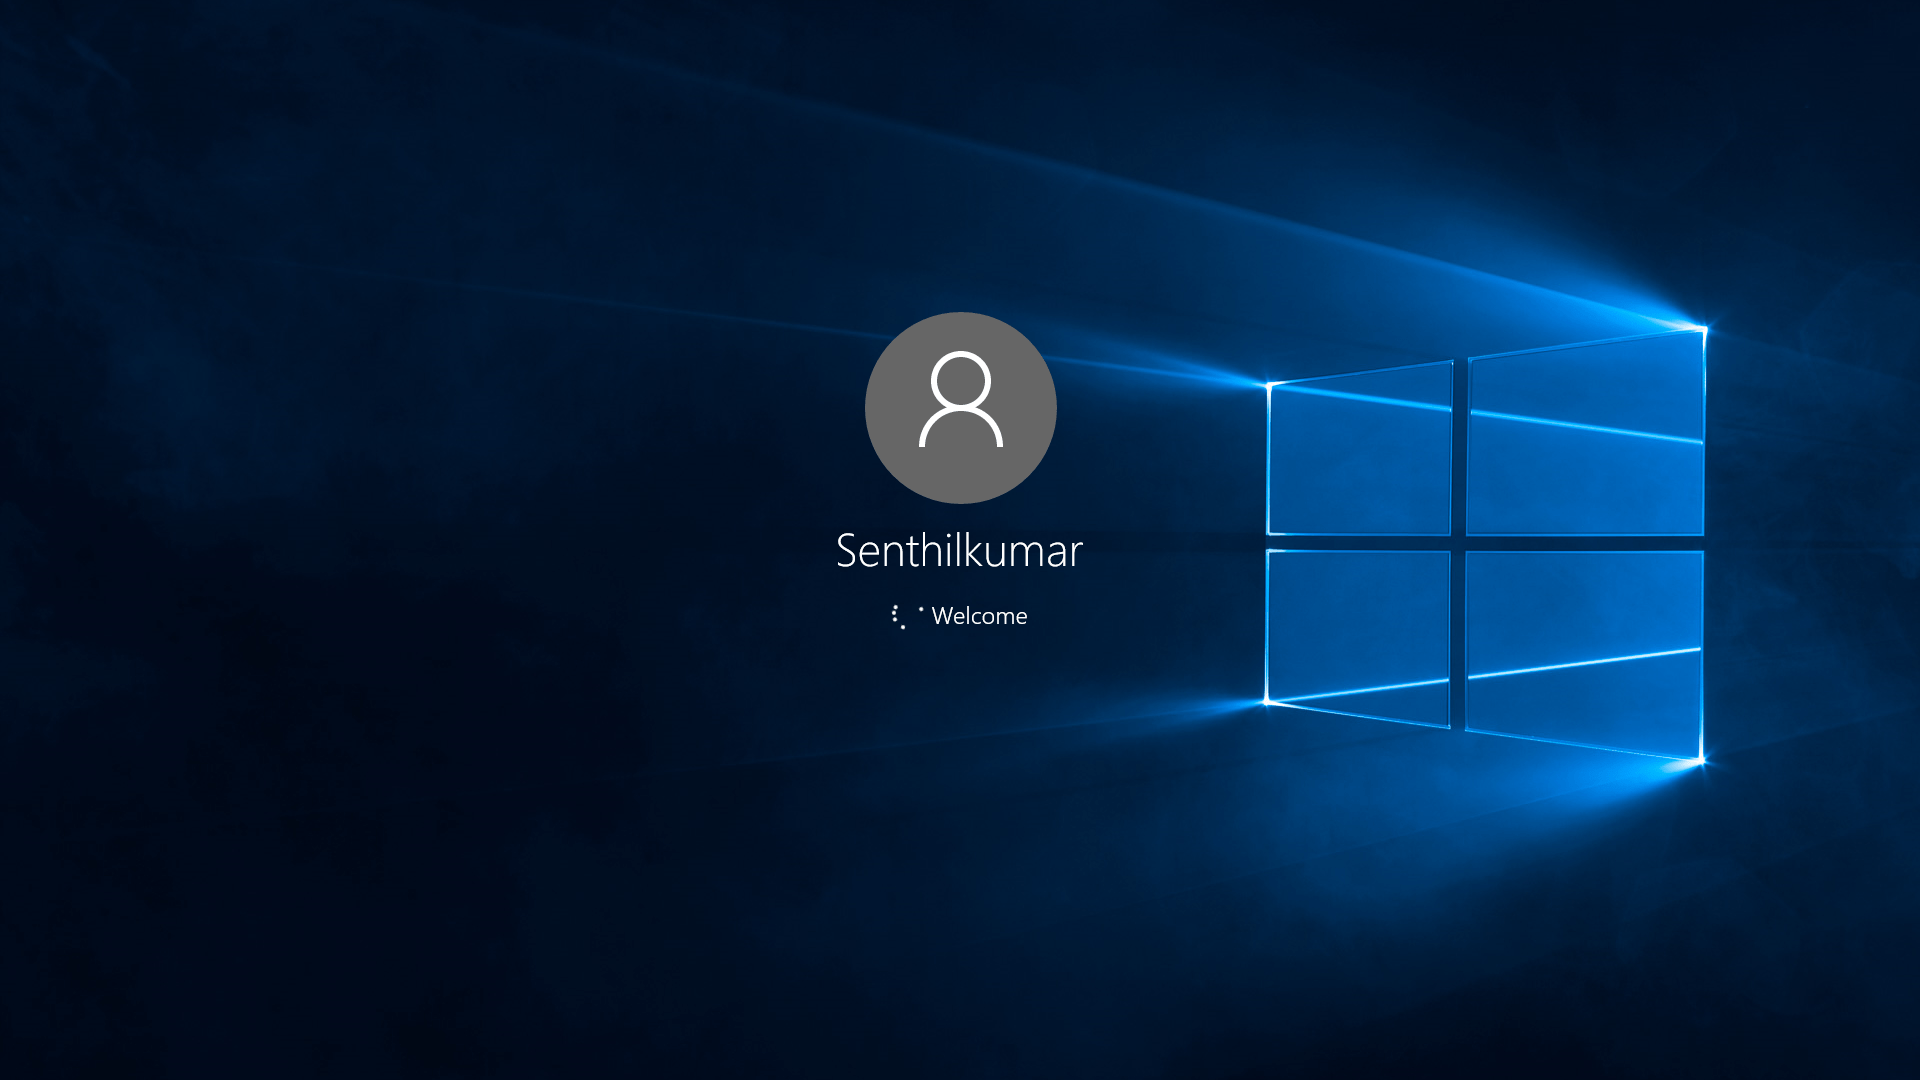 Pantalla de inicio de sesión de Windows 10